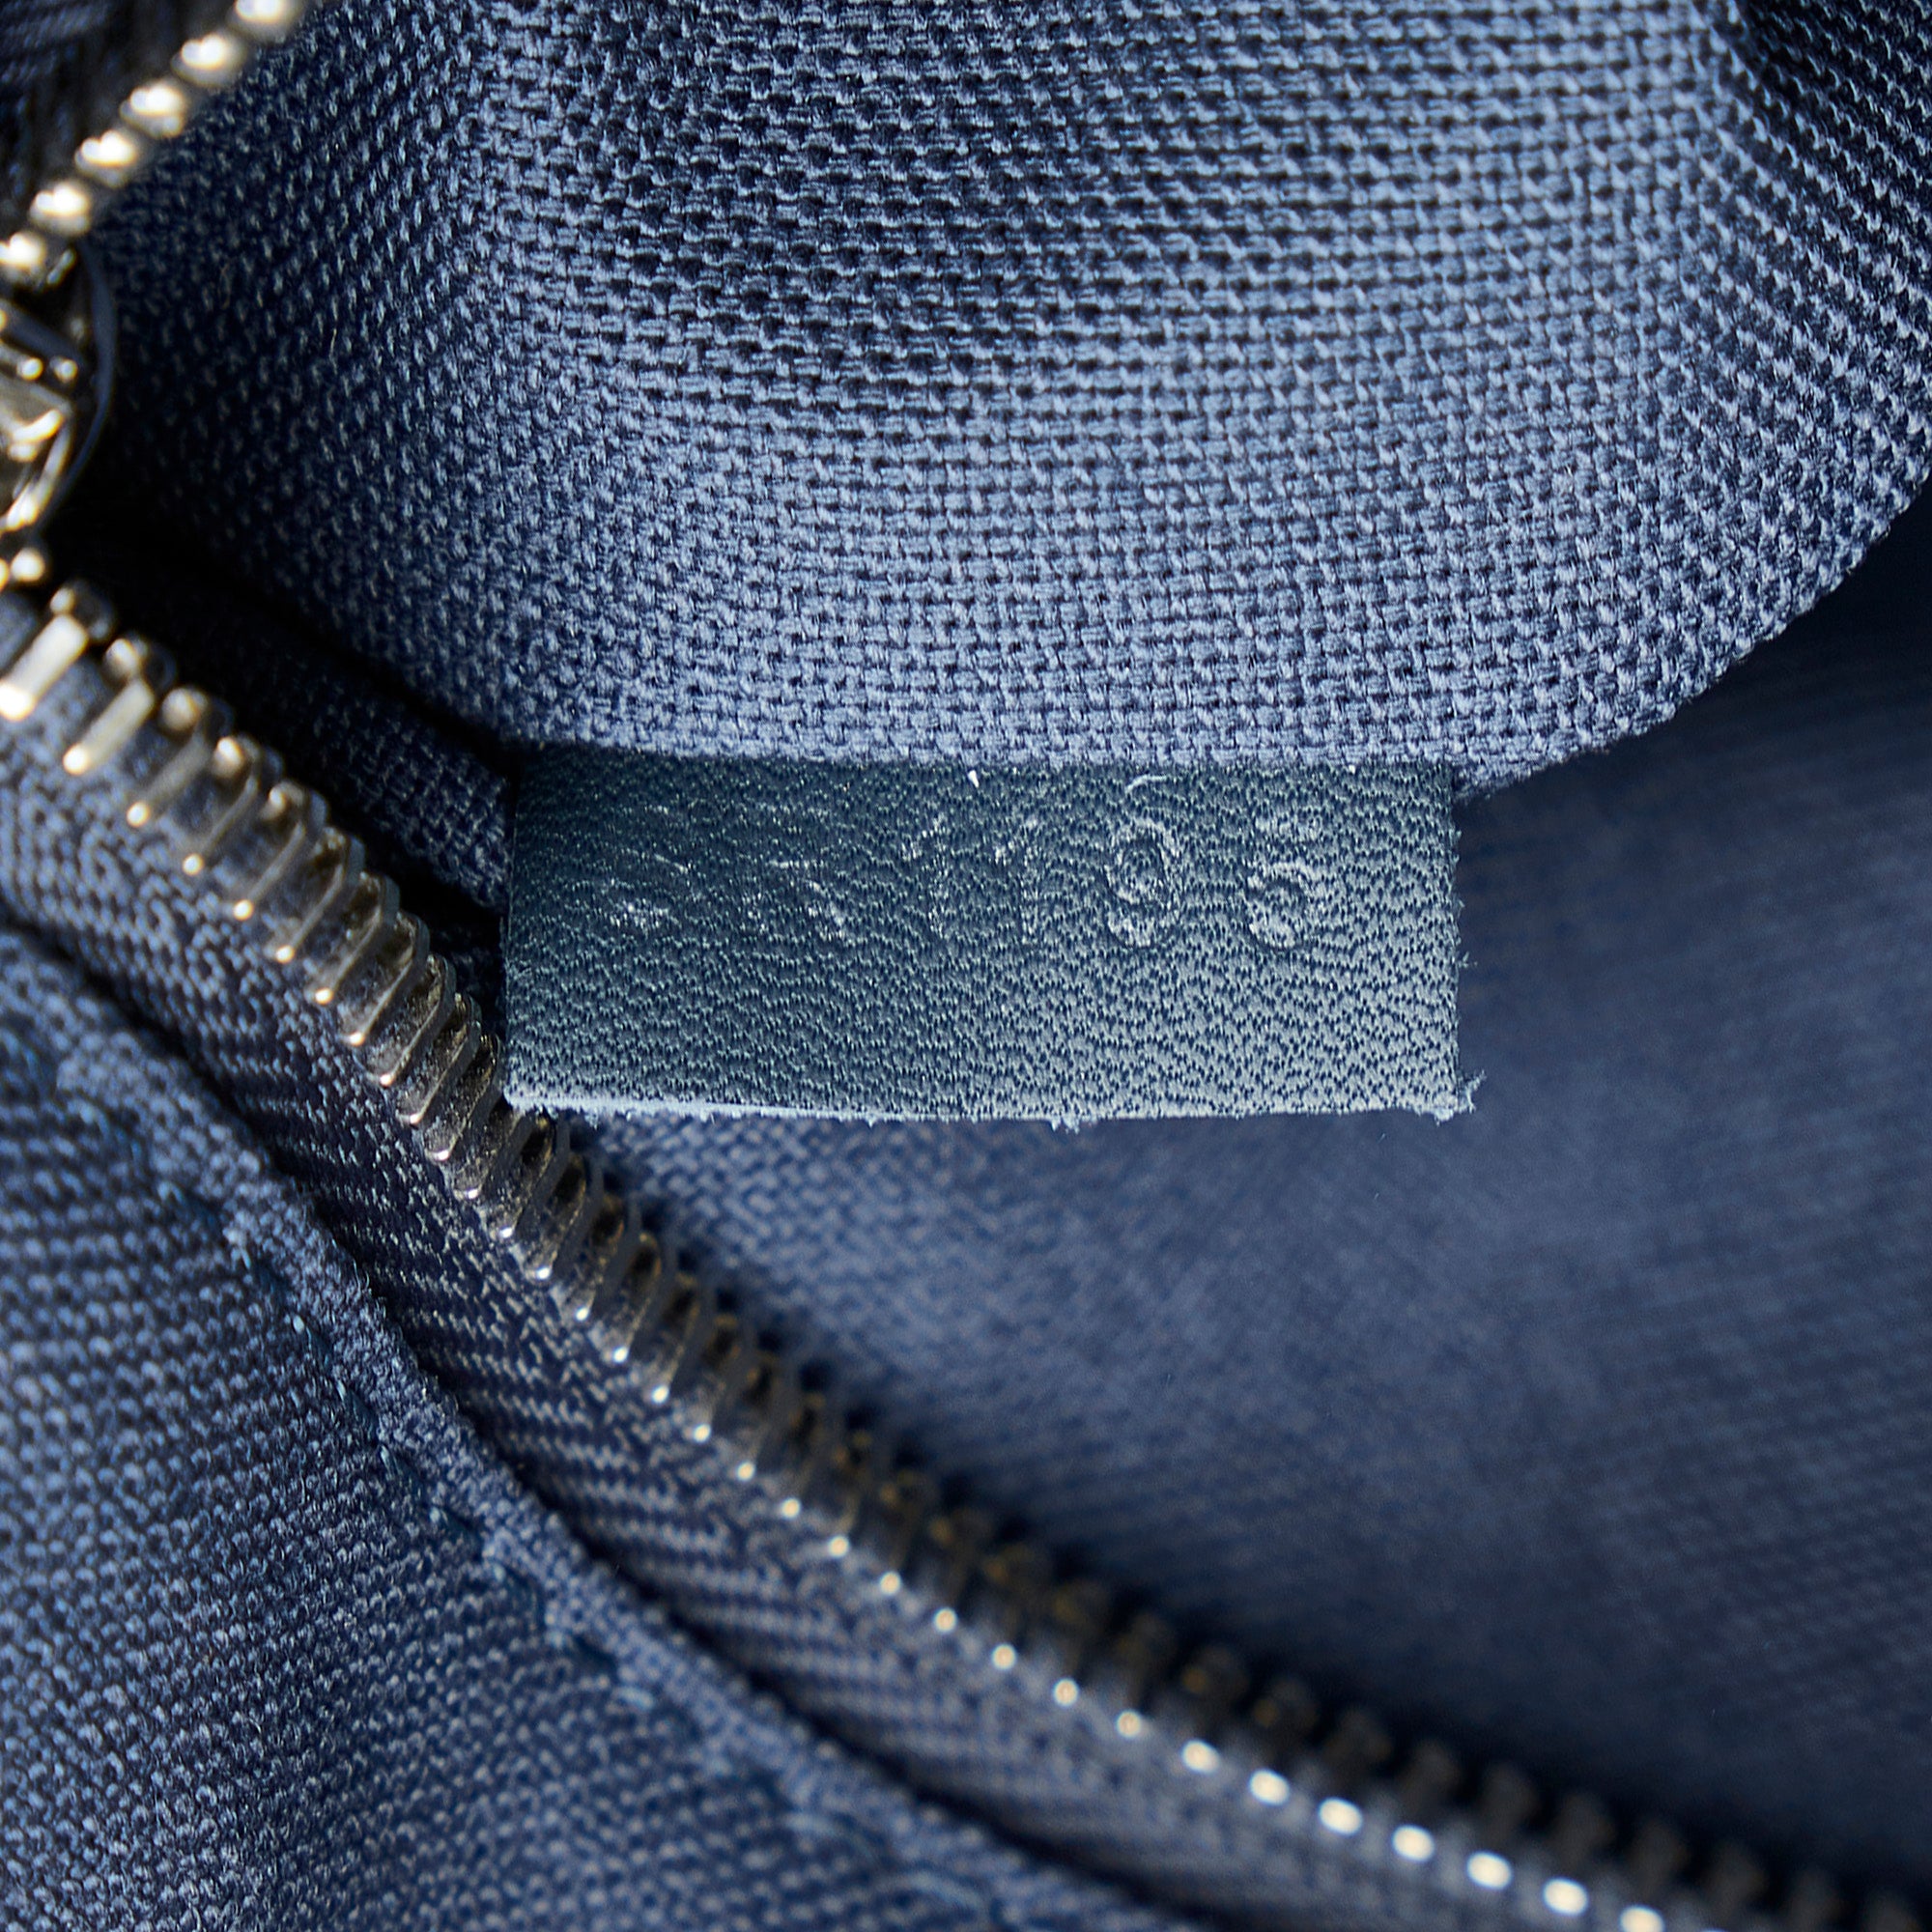 Brown Louis Vuitton Damier Ebene Runner Backpack – Designer Revival